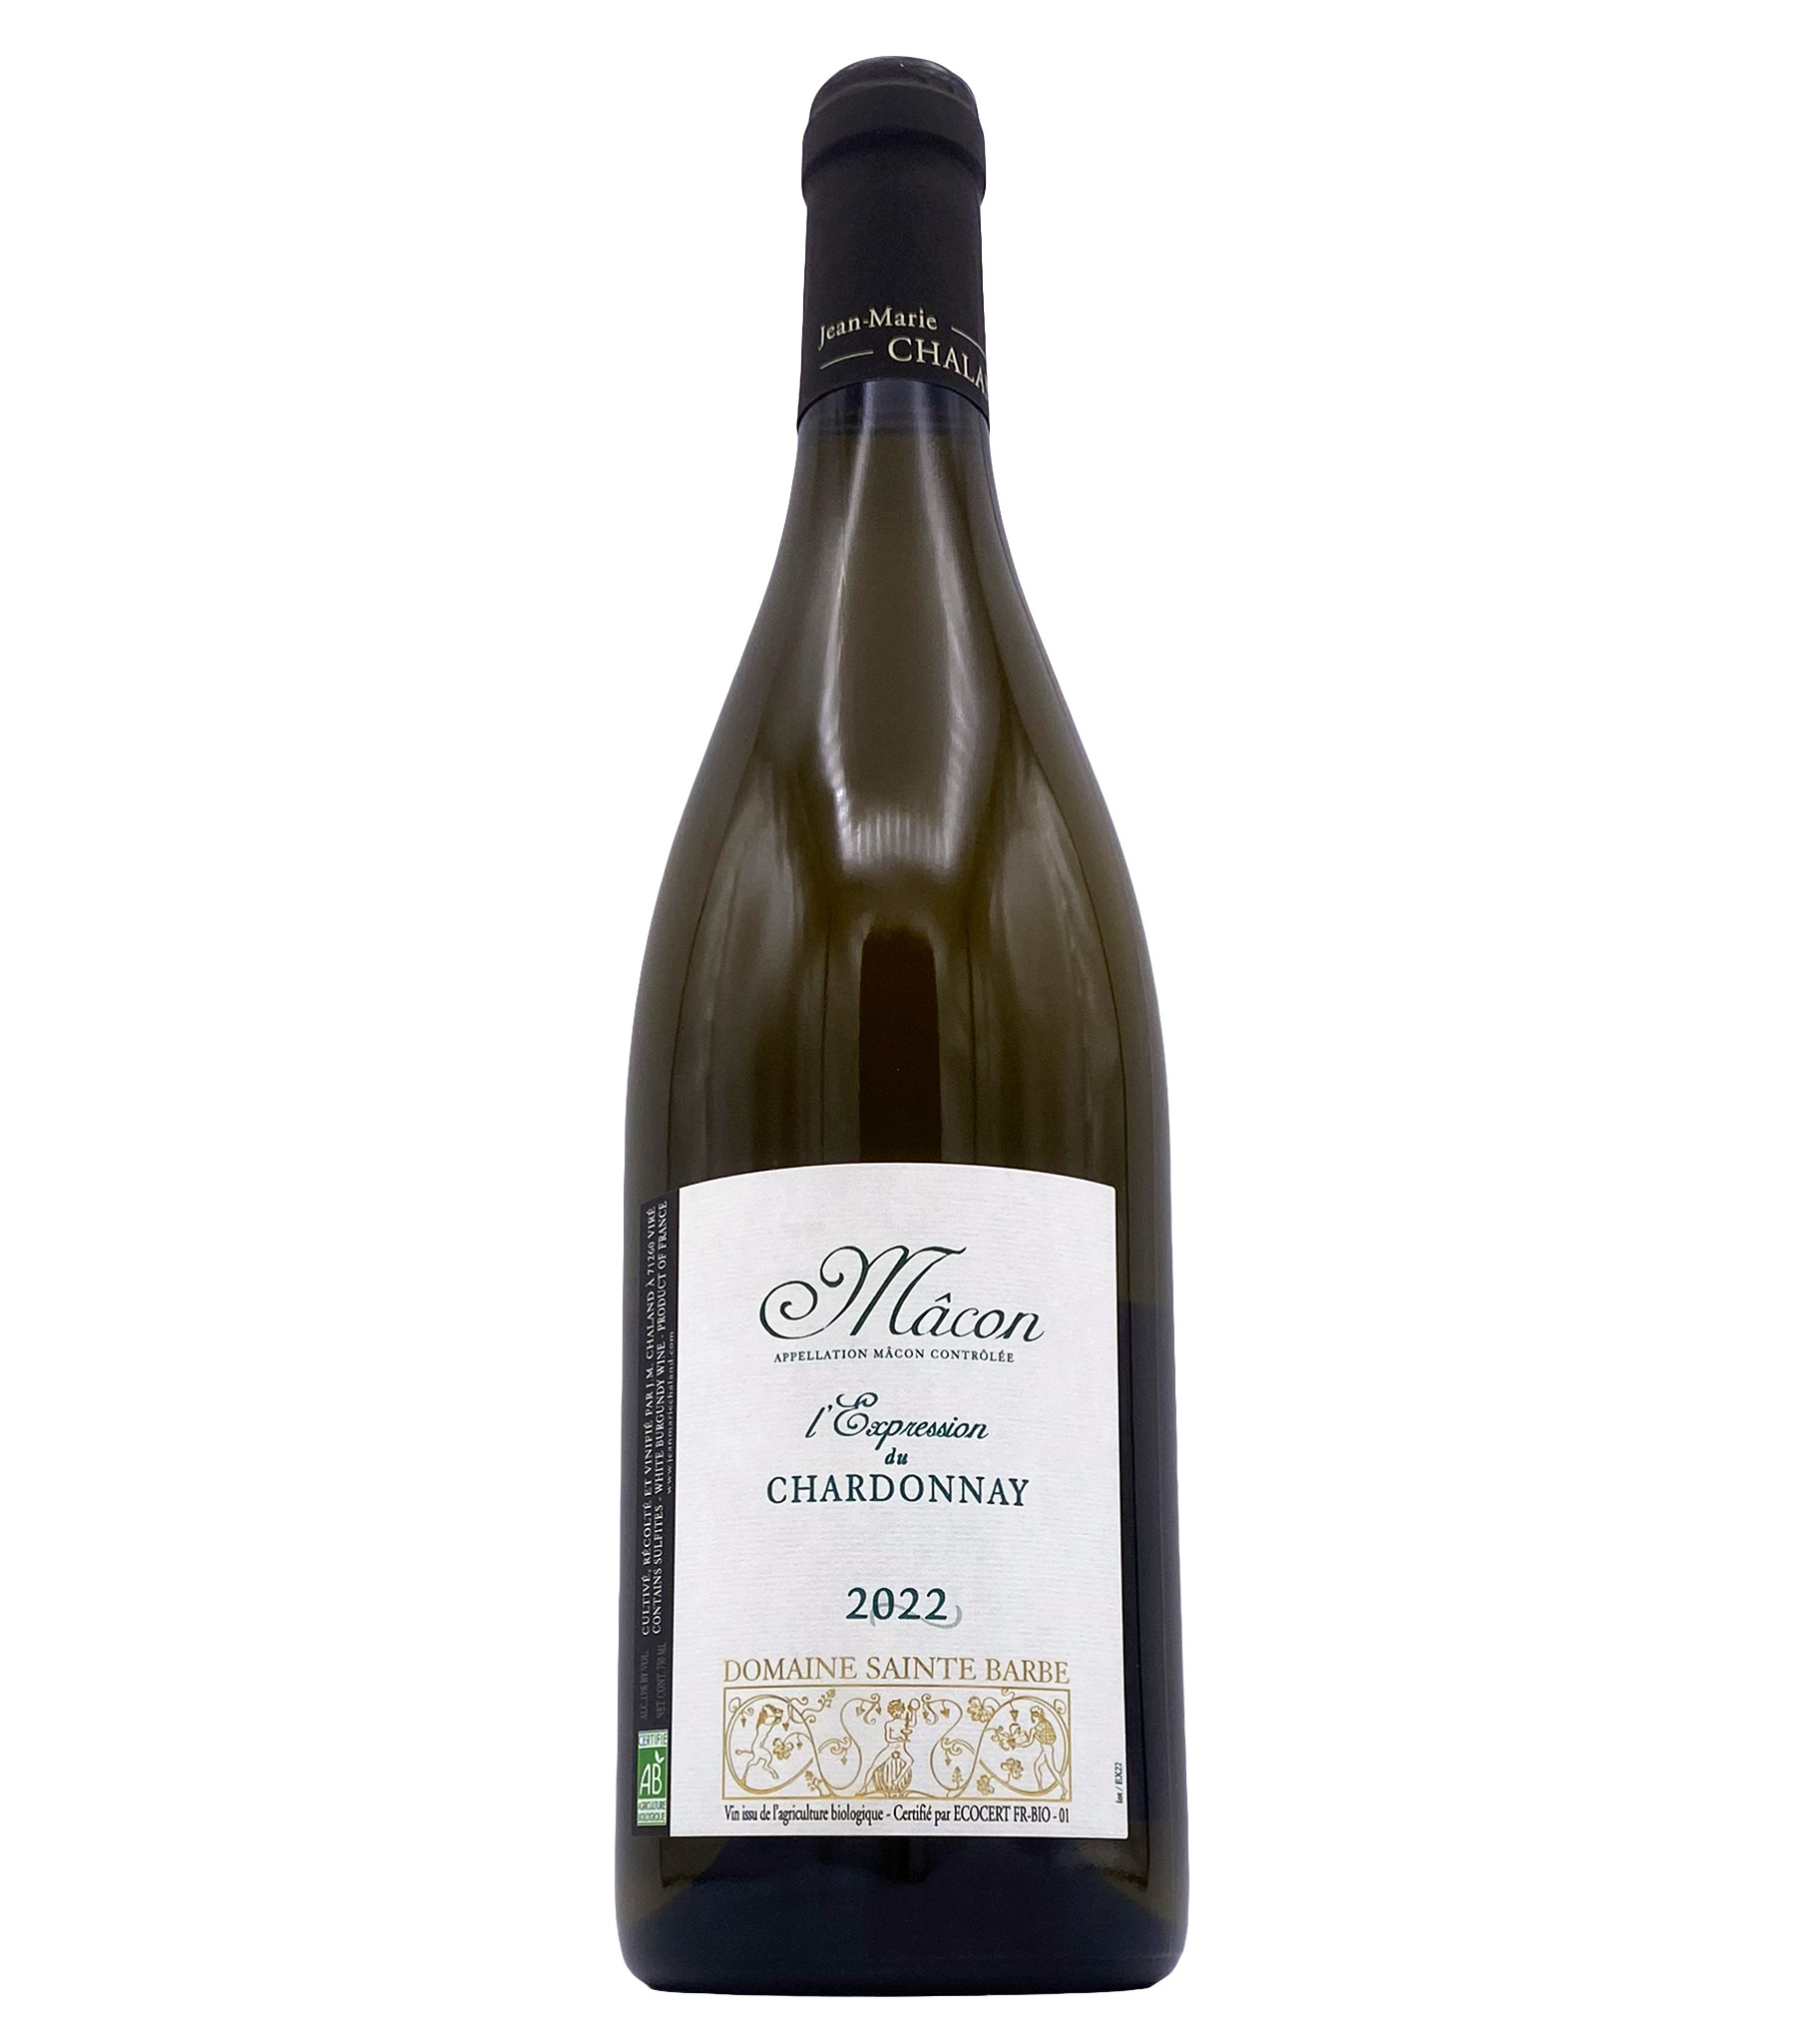 Mâcon Expression de Chardonnay 2022 Sainte Barbe*